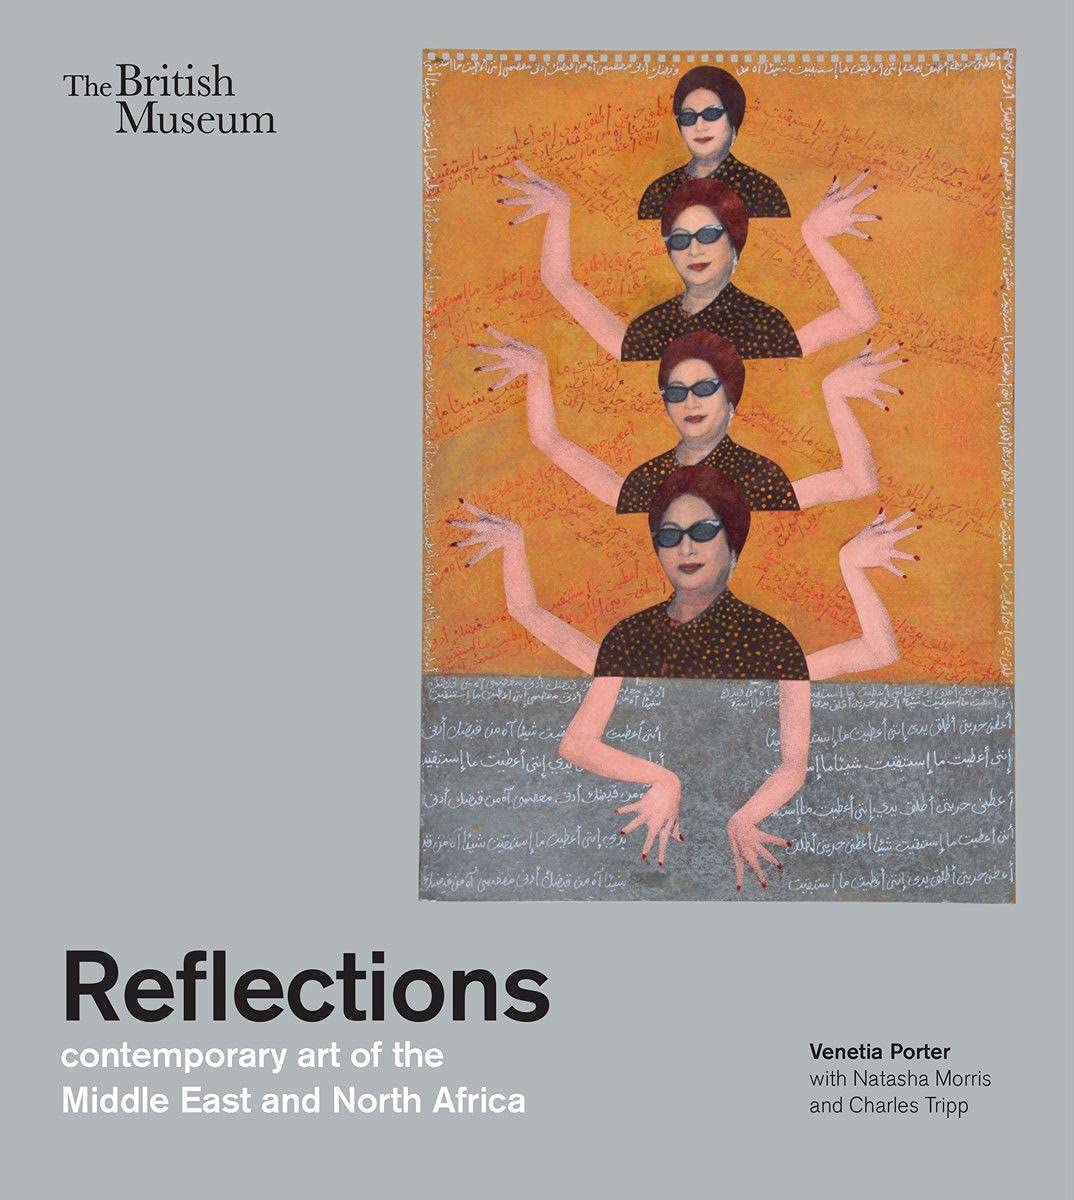 现货Reflections: contemporary art of the Middle East and North Africa 反思:中东和北非的当代艺术